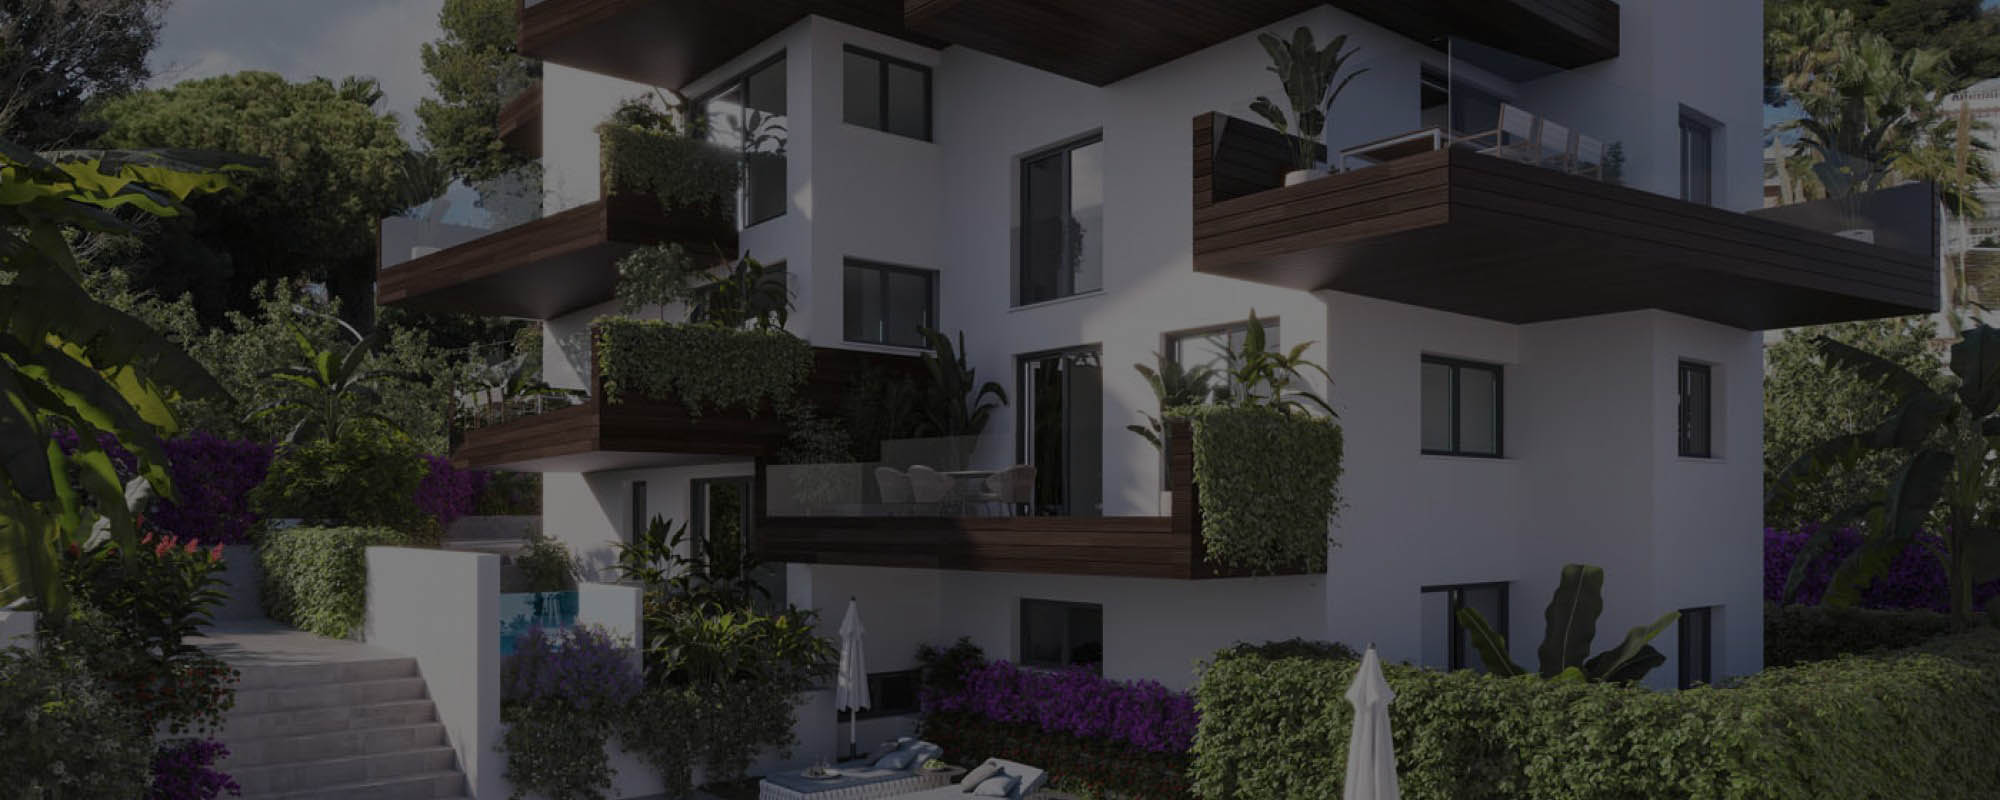 Renders 3D de un edificio residencial en Torremolinos, Málaga